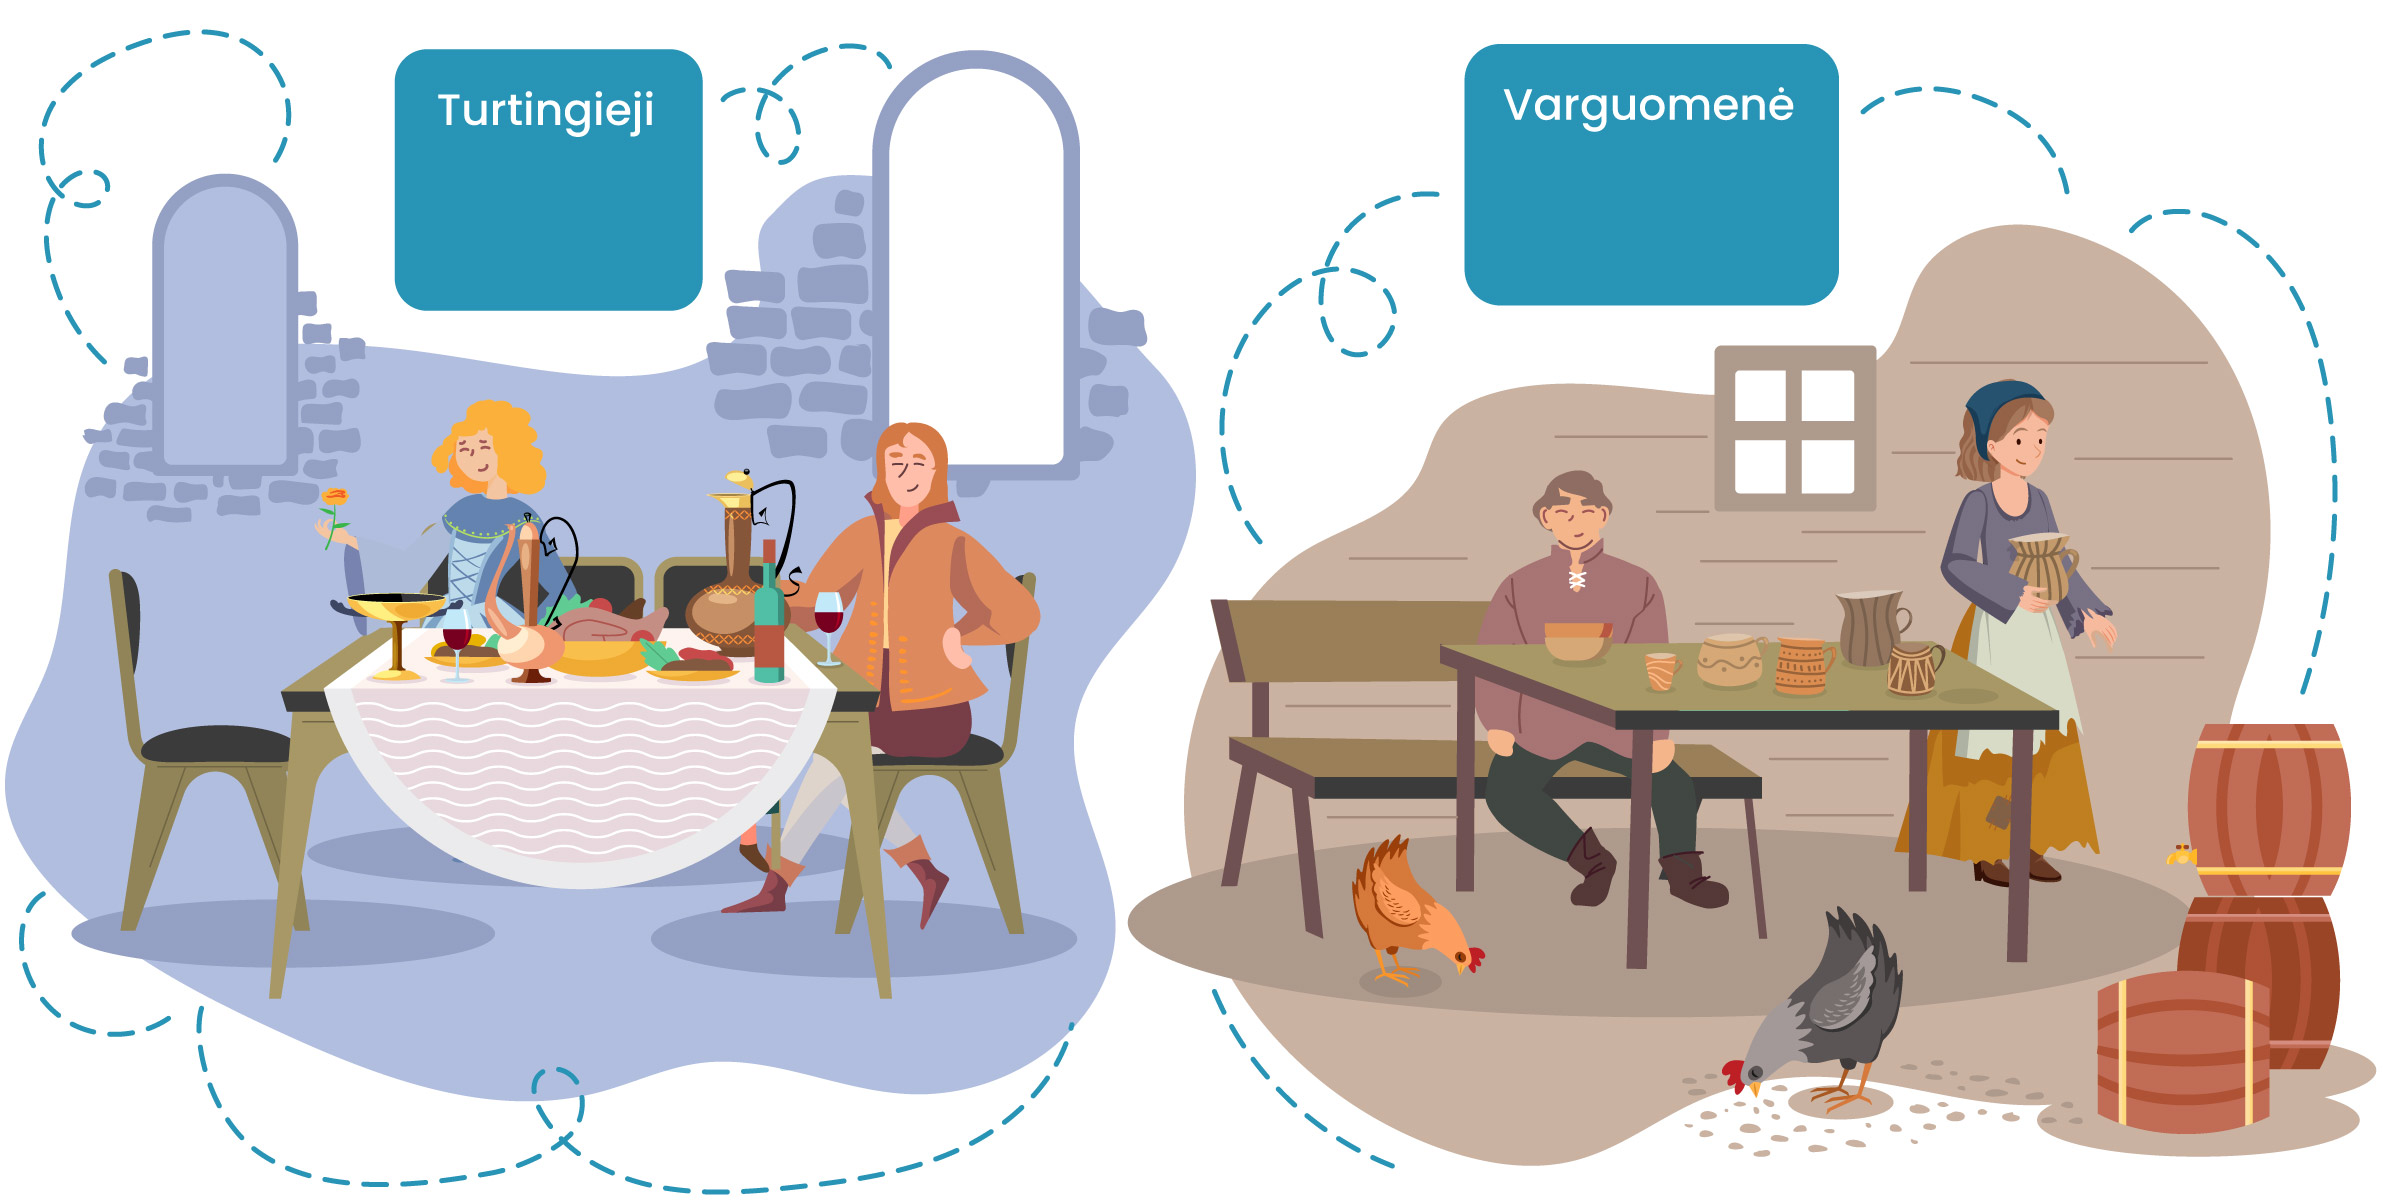 Dvipusė iliustracija, skirianti turtinguosius ir varguomenę. Kairėje pusėje - turtingieji, sėdintis prie gausau stalo, kitoje pusėje moterys ir vyras, vaizduojami prie negausaus stalo, mediniais indais. Šalia vištos.